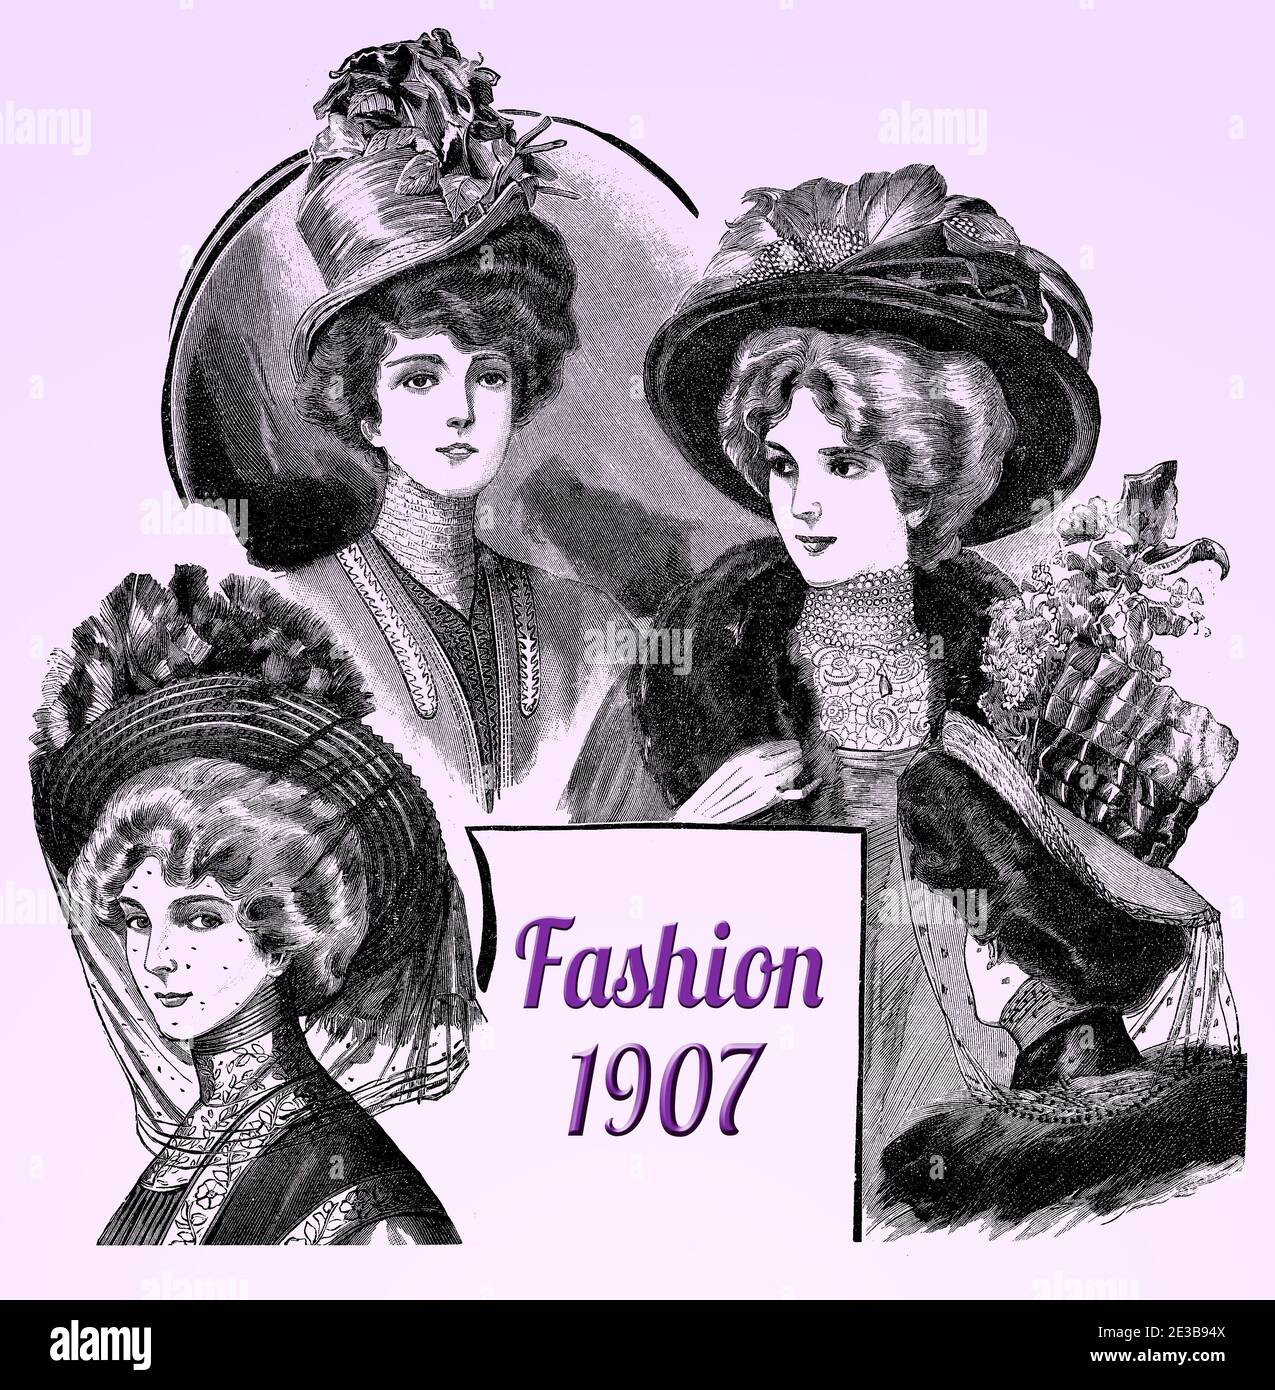 Sombrero de señoras y moda de peluquería 1907, sombreros anchos con plumas, flores y cintas elaboradas, Gibson niña peinado con pelos apilados, blusa de cuello alto, florituras y cordones Foto de stock